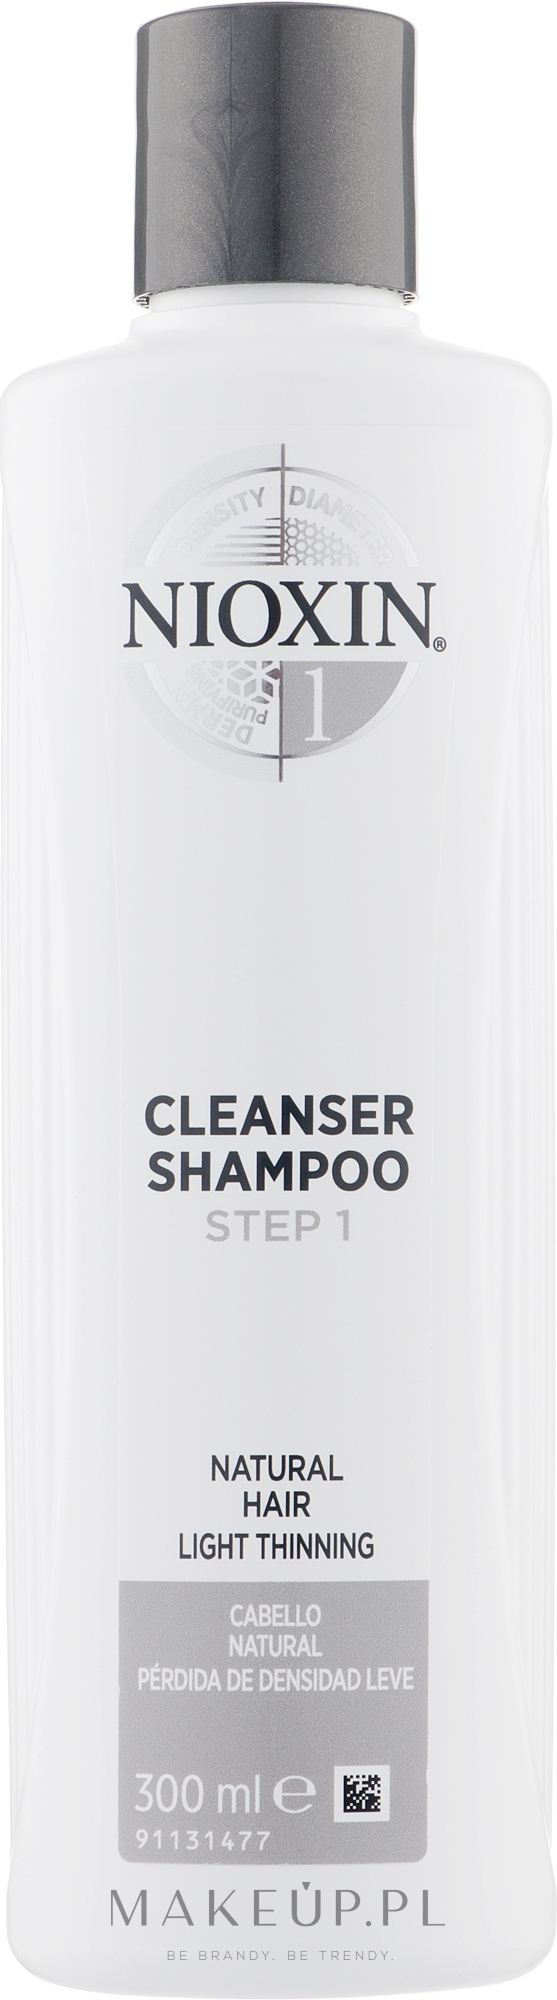 Wzmacniający szampon do skóry głowy i włosów normalnych, cienkich i delikatnie przerzedzonych - Nioxin System 1 Fine Hair Cleanser Shampoo Step 1 — Zdjęcie 300 ml